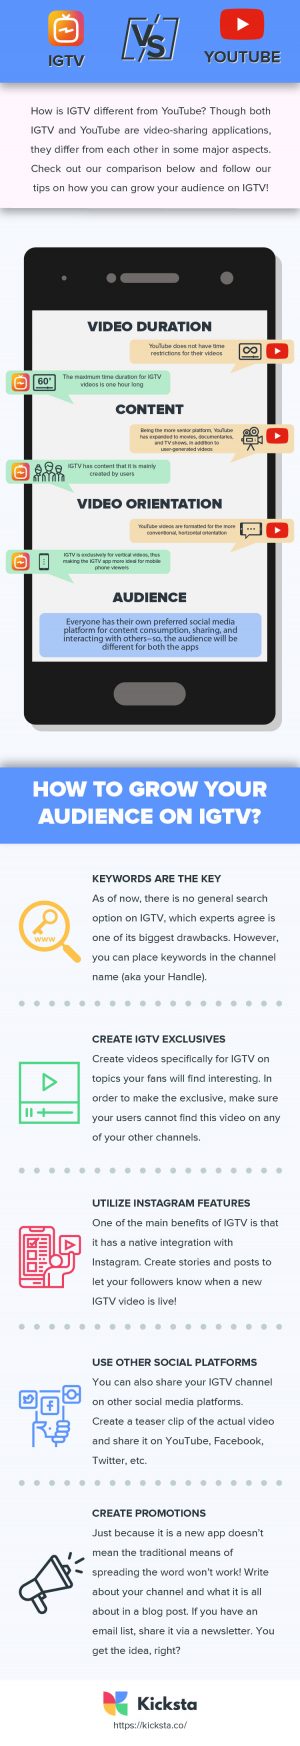 IGTV vs YouTube